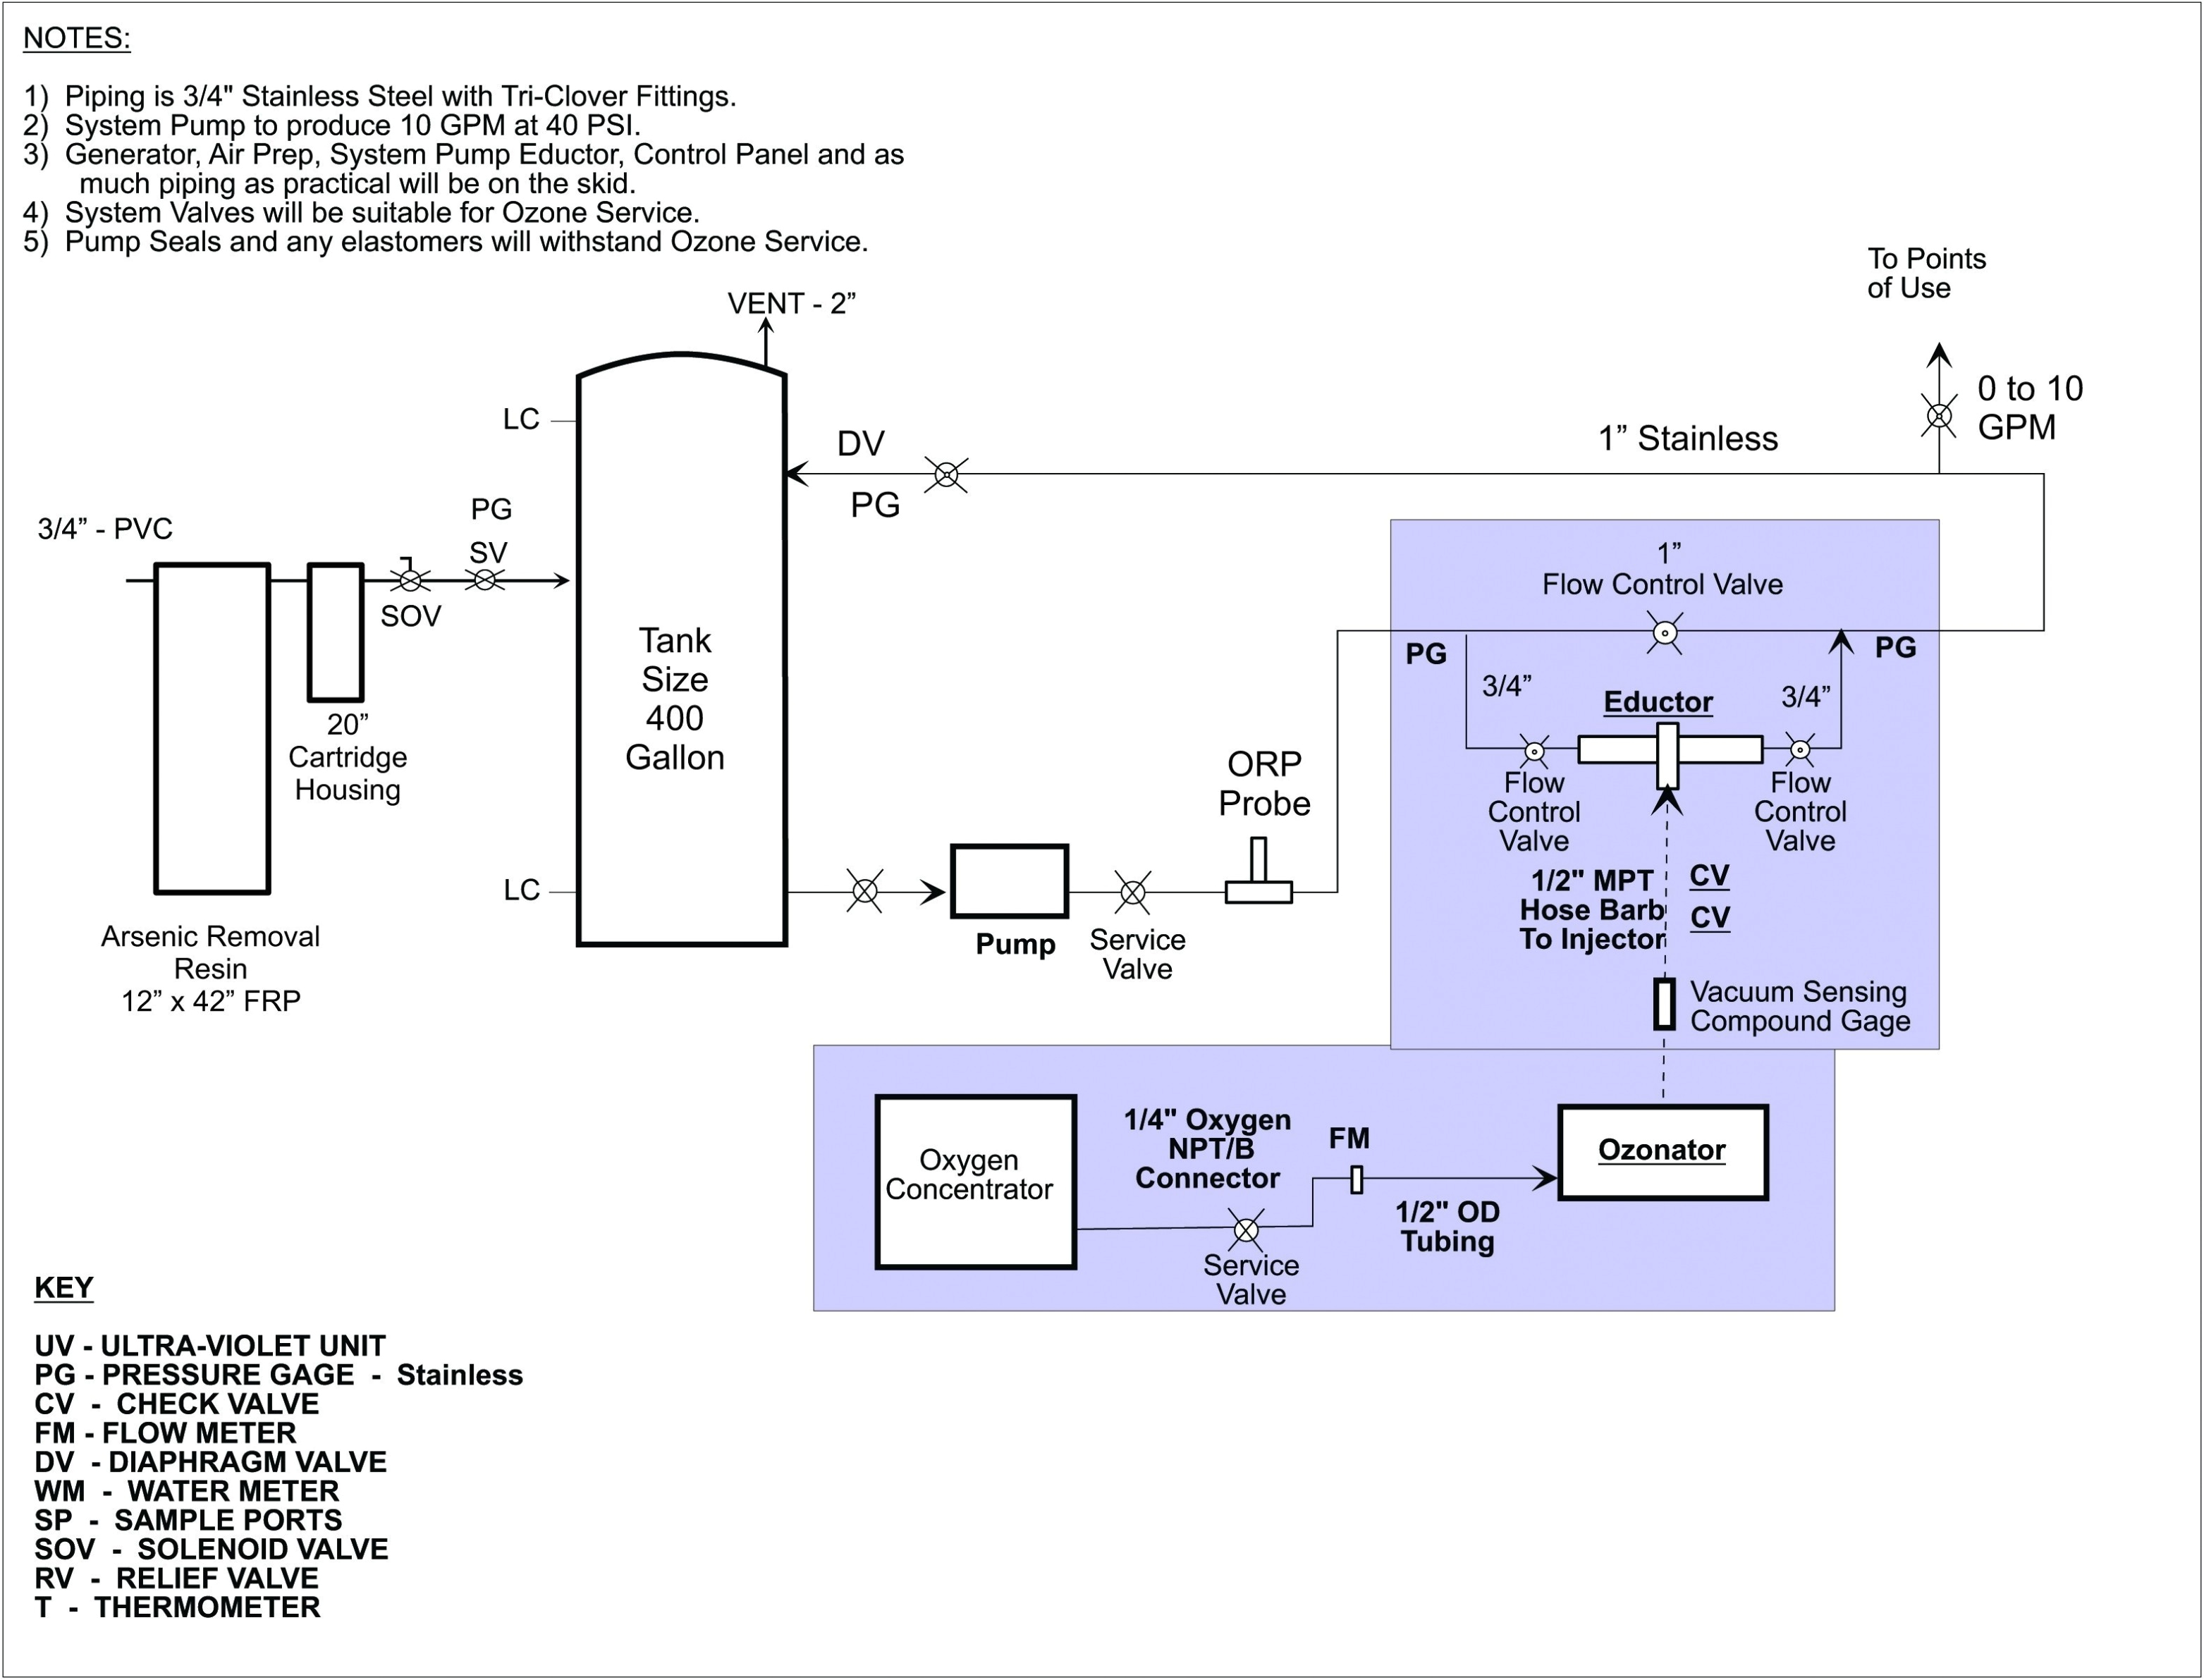 wiring diagram for powermate generator get free image about wiringpowermate wiring diagram wiring diagram powermate generator